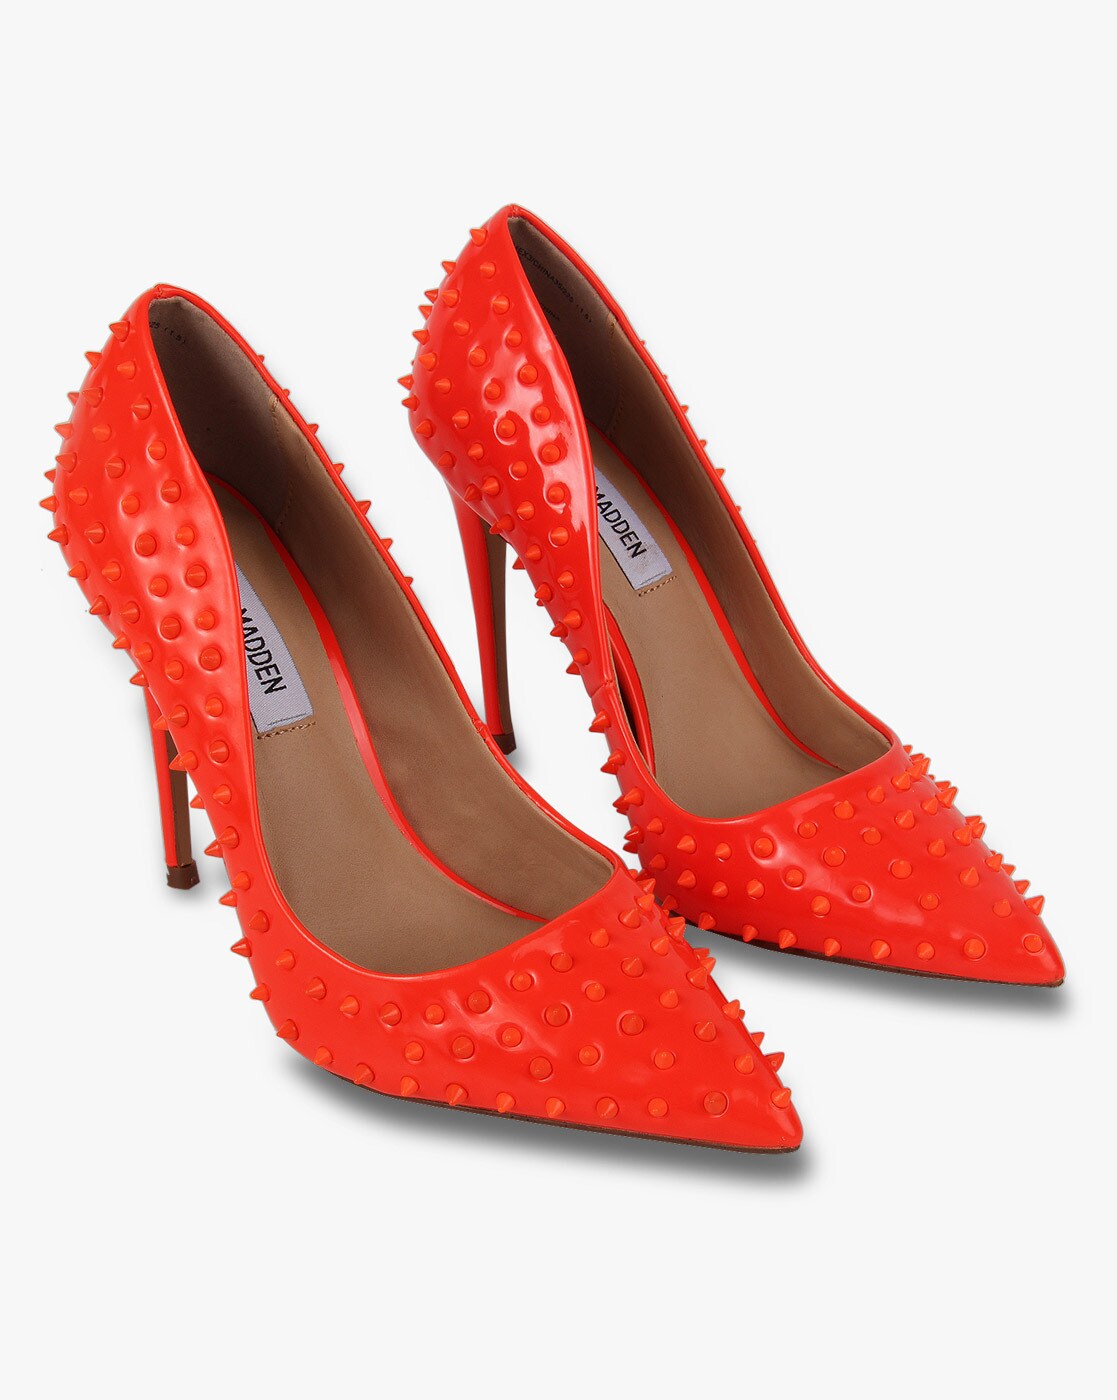 Buy GaborWomen's classic pumps, women's heels Online at desertcartINDIA